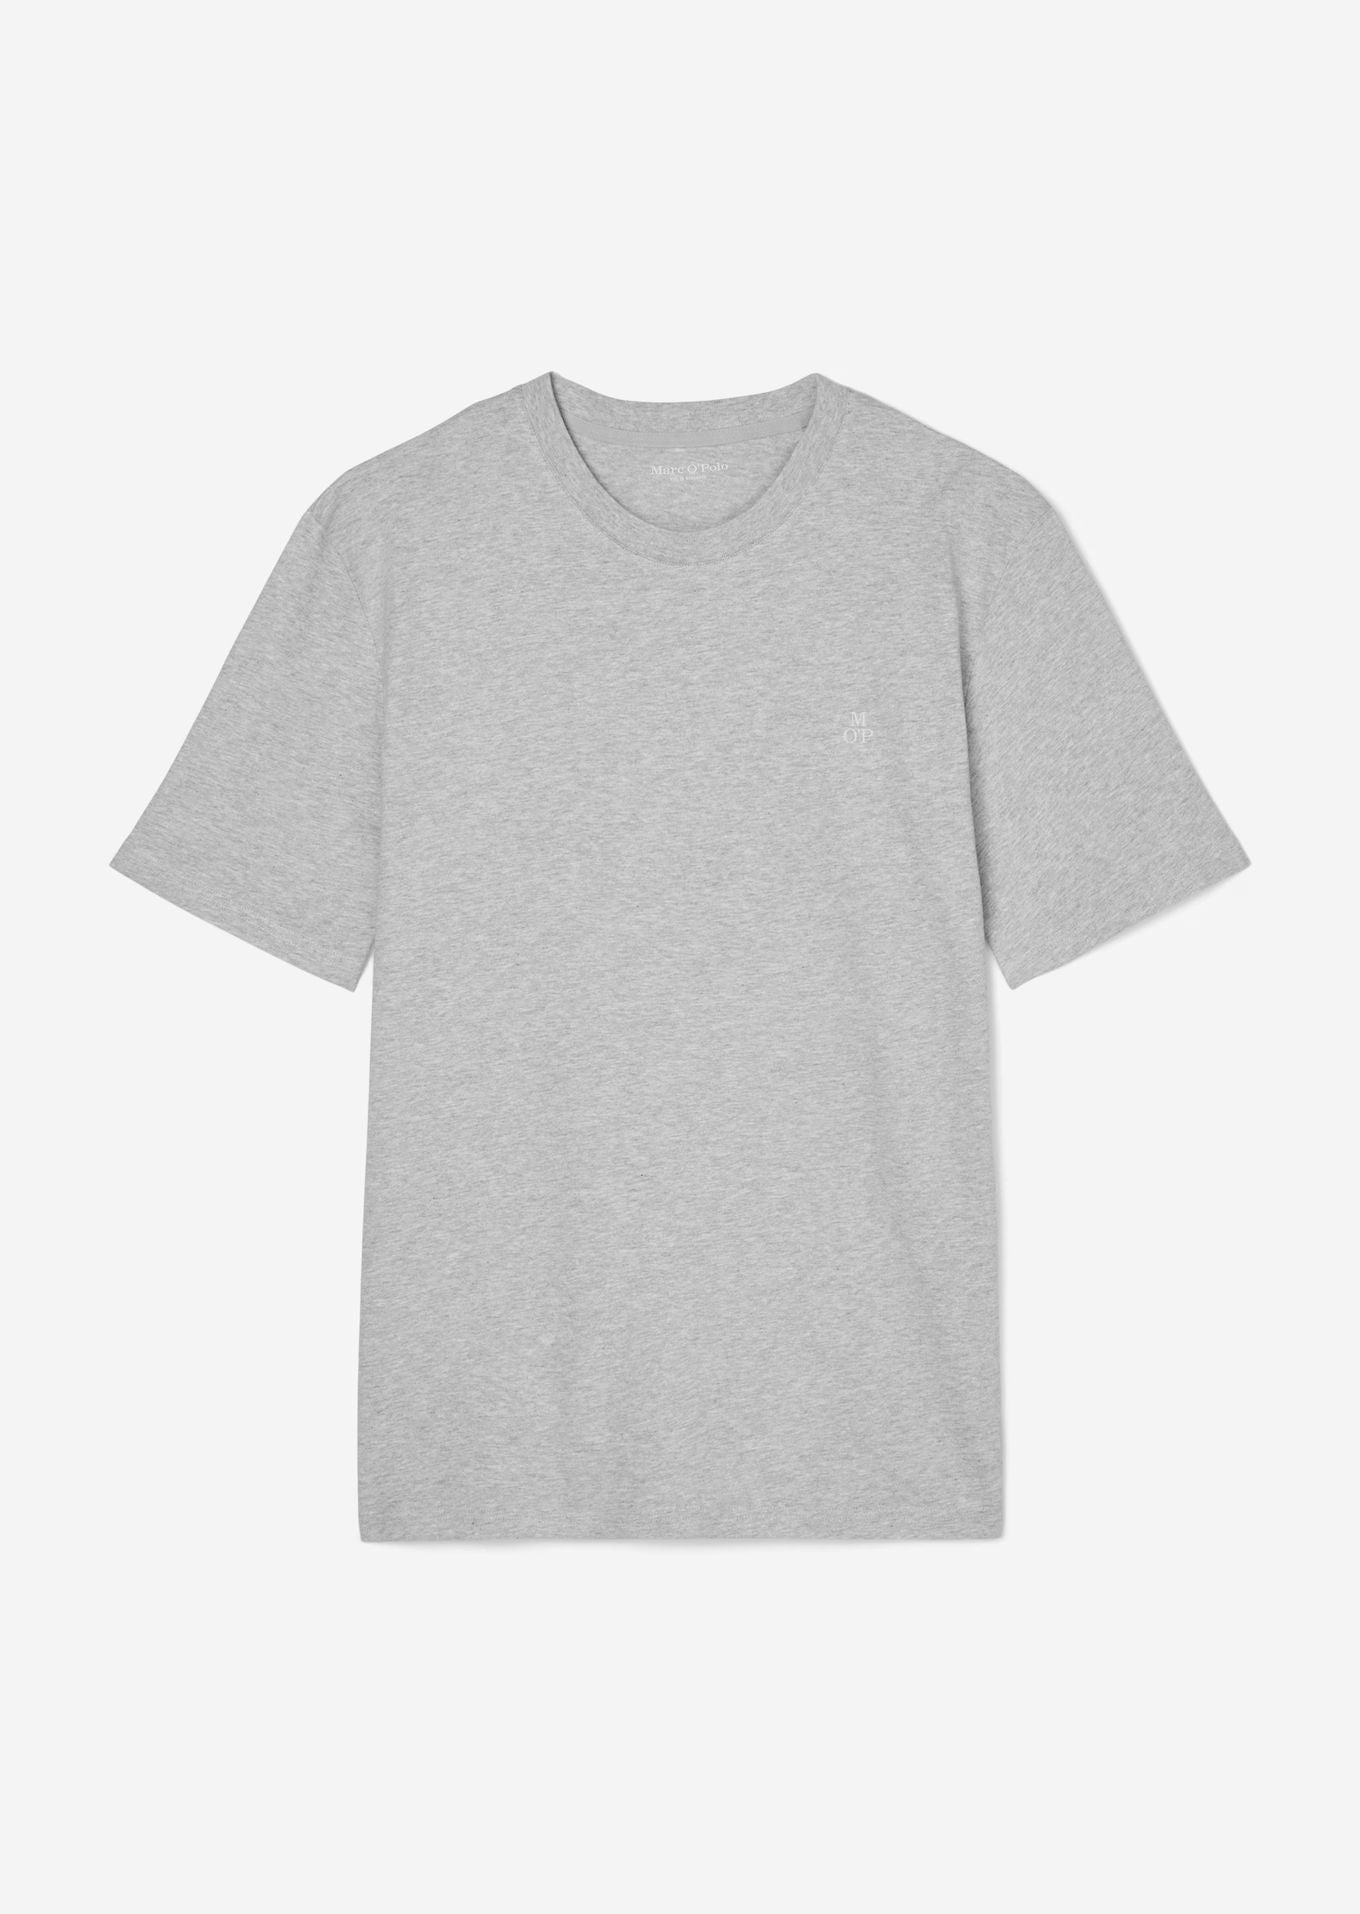 Marc O'Polo Grey Melange Round Neck T-Shirt